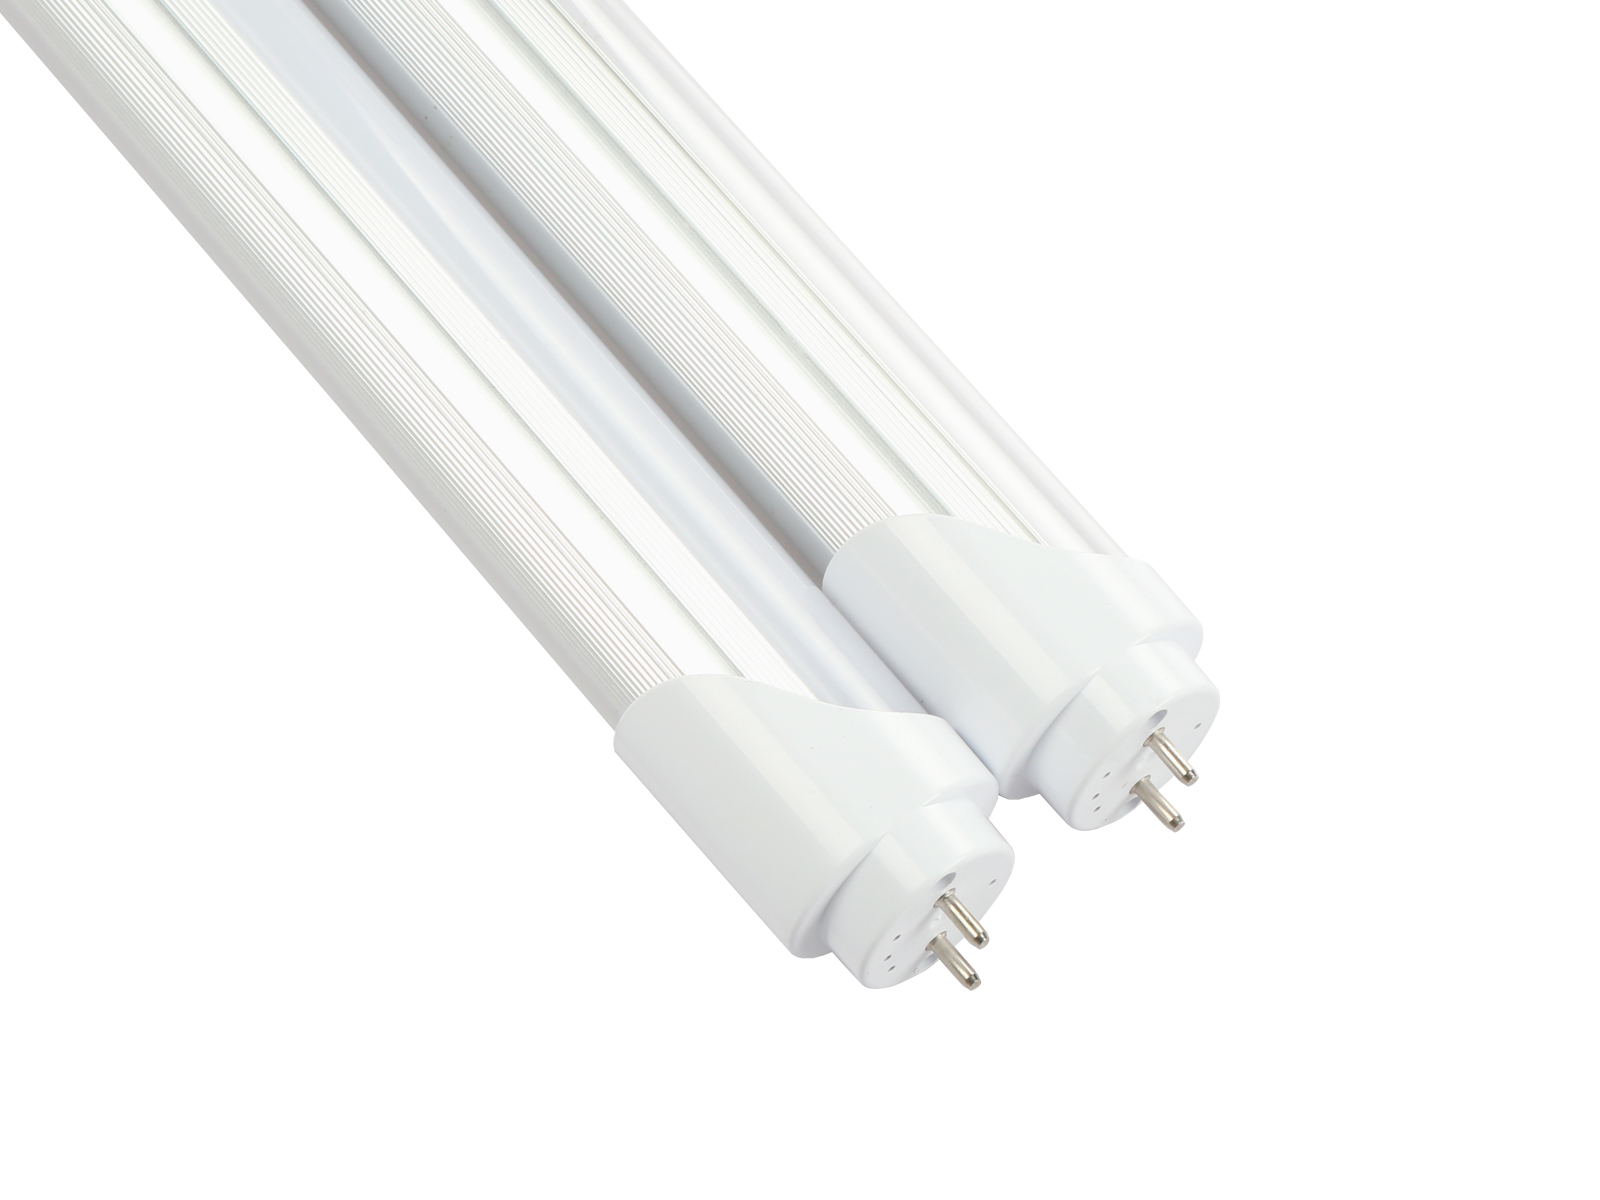 LED Batten Slimline Tube Light Wall/Ceiling Slim Natural Day White 5ft 1500mm 